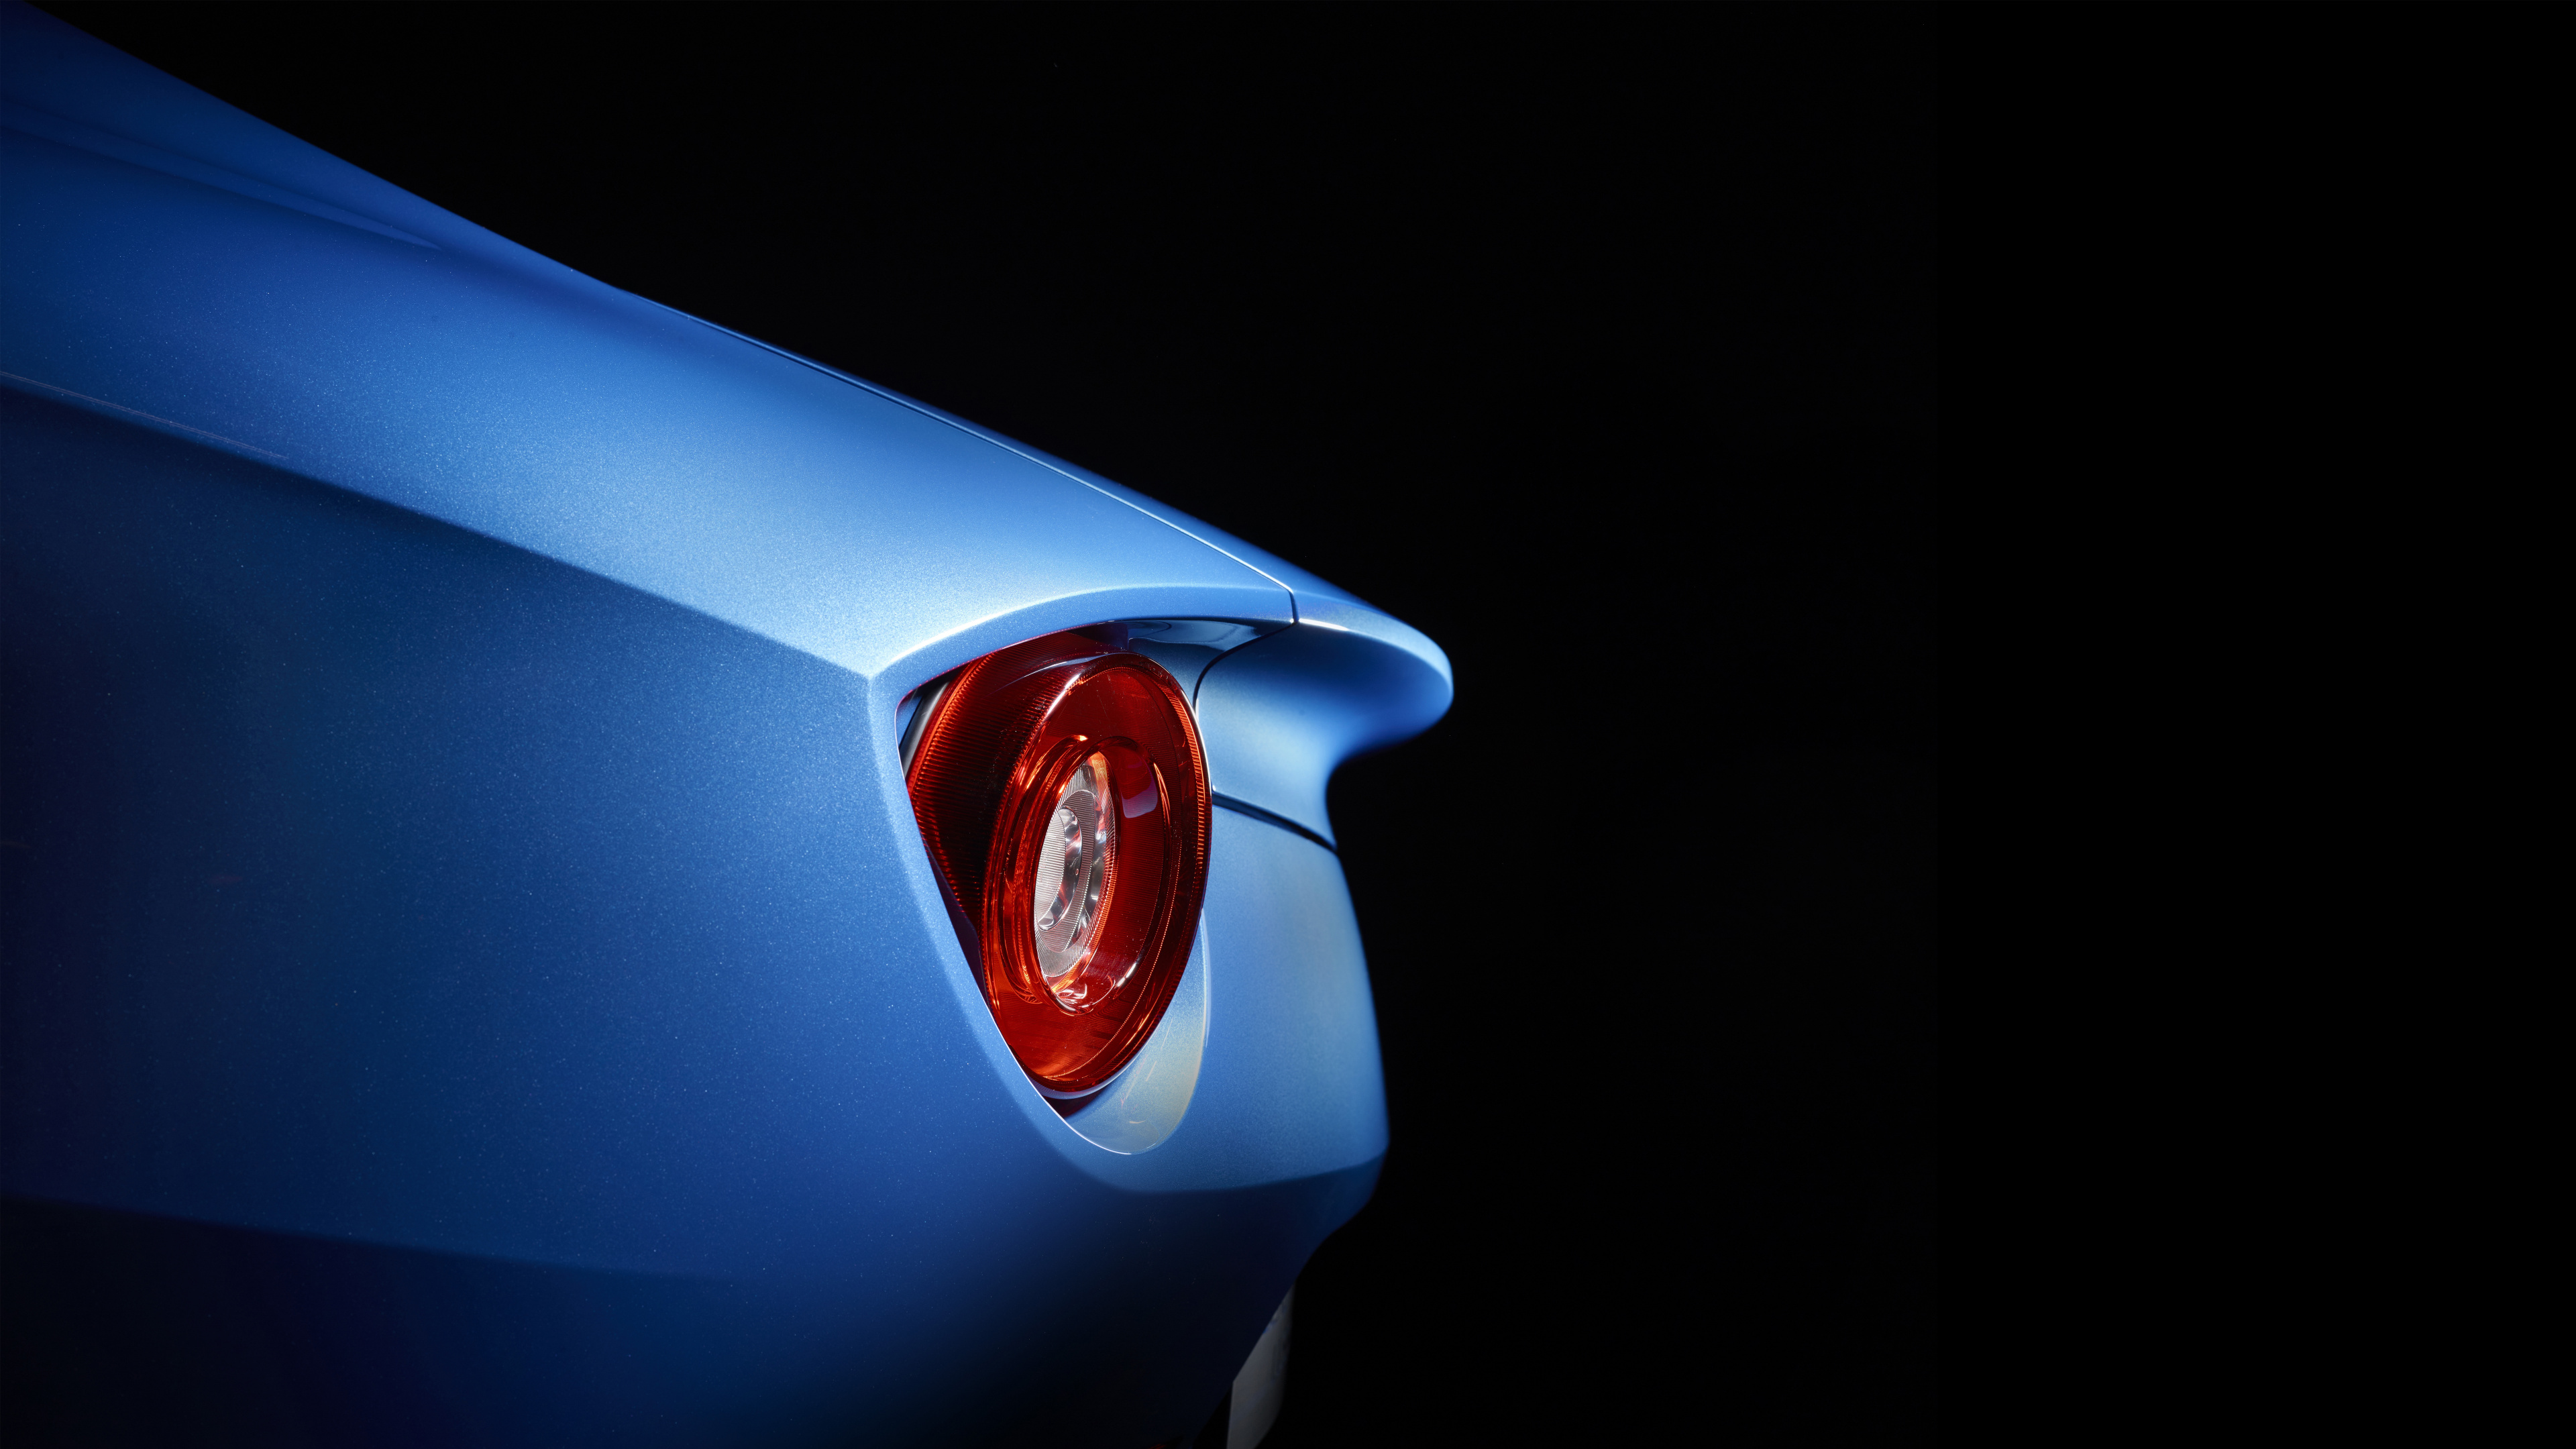 Blaues Auto Mit Rotem Licht. Wallpaper in 3840x2160 Resolution